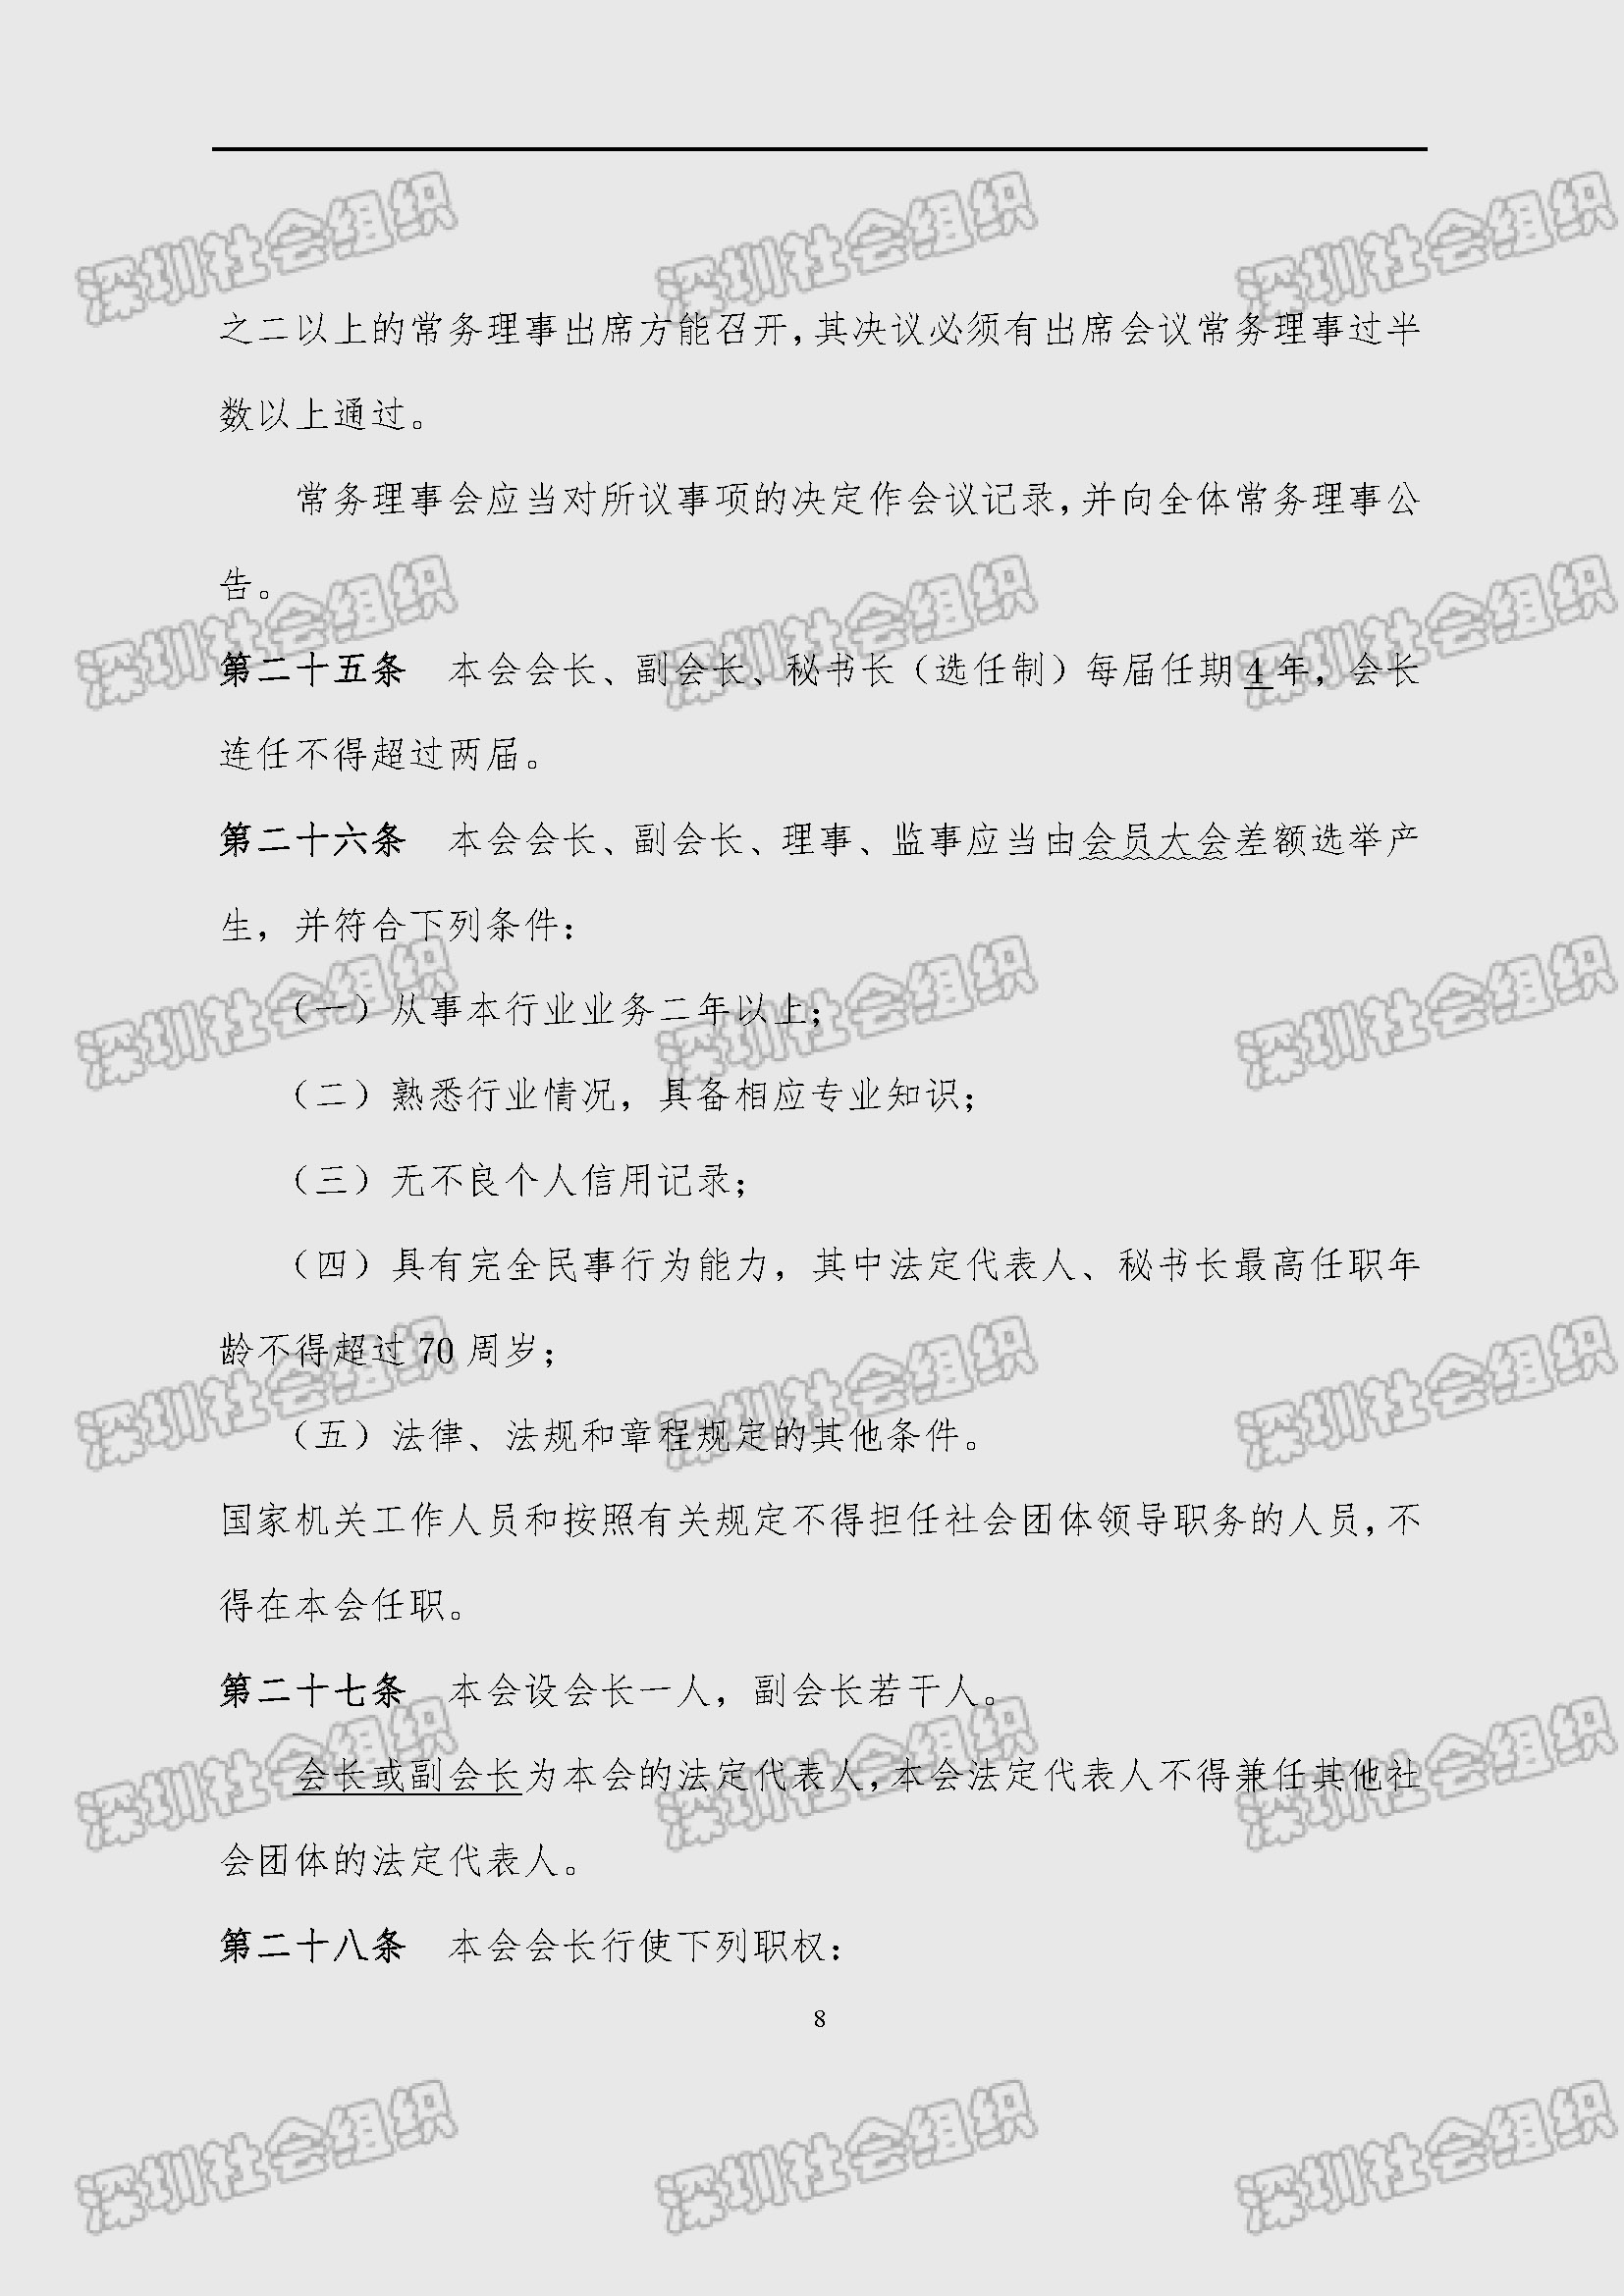 深圳市新材料行业协会章程_页面_08.jpg